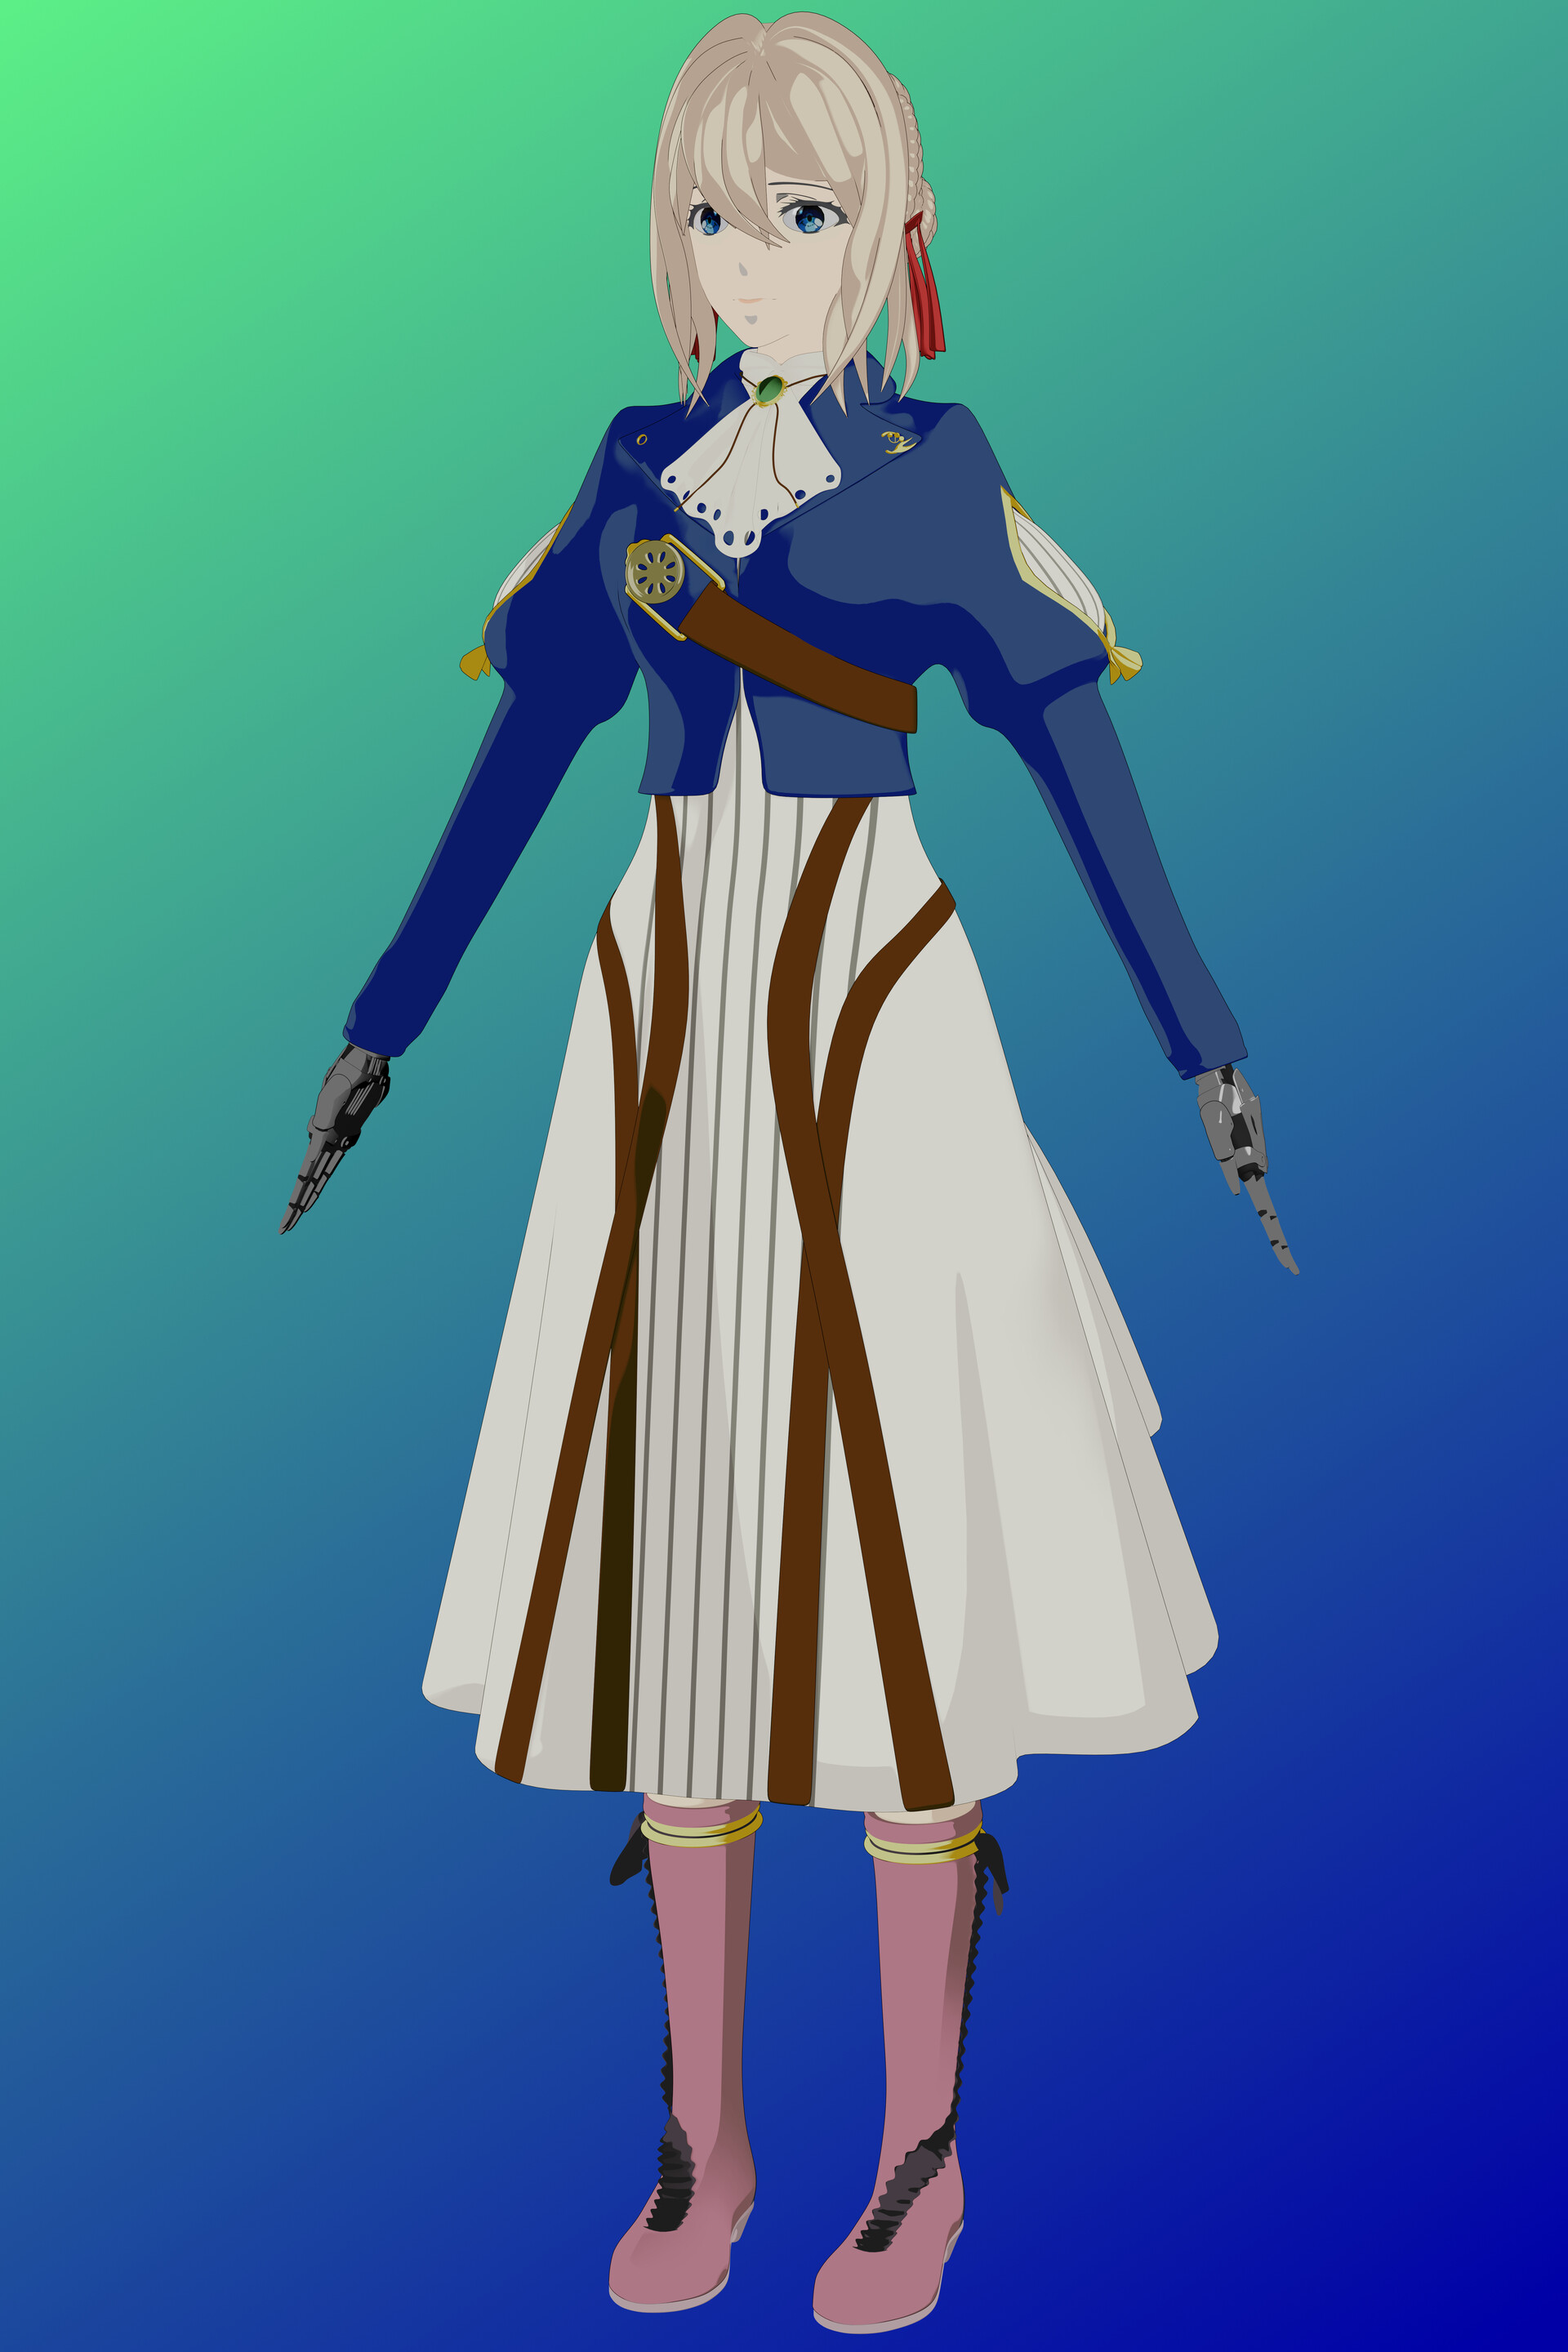 Modelo 3D de personagem Violeta O level design do jogo foi desenvolvido